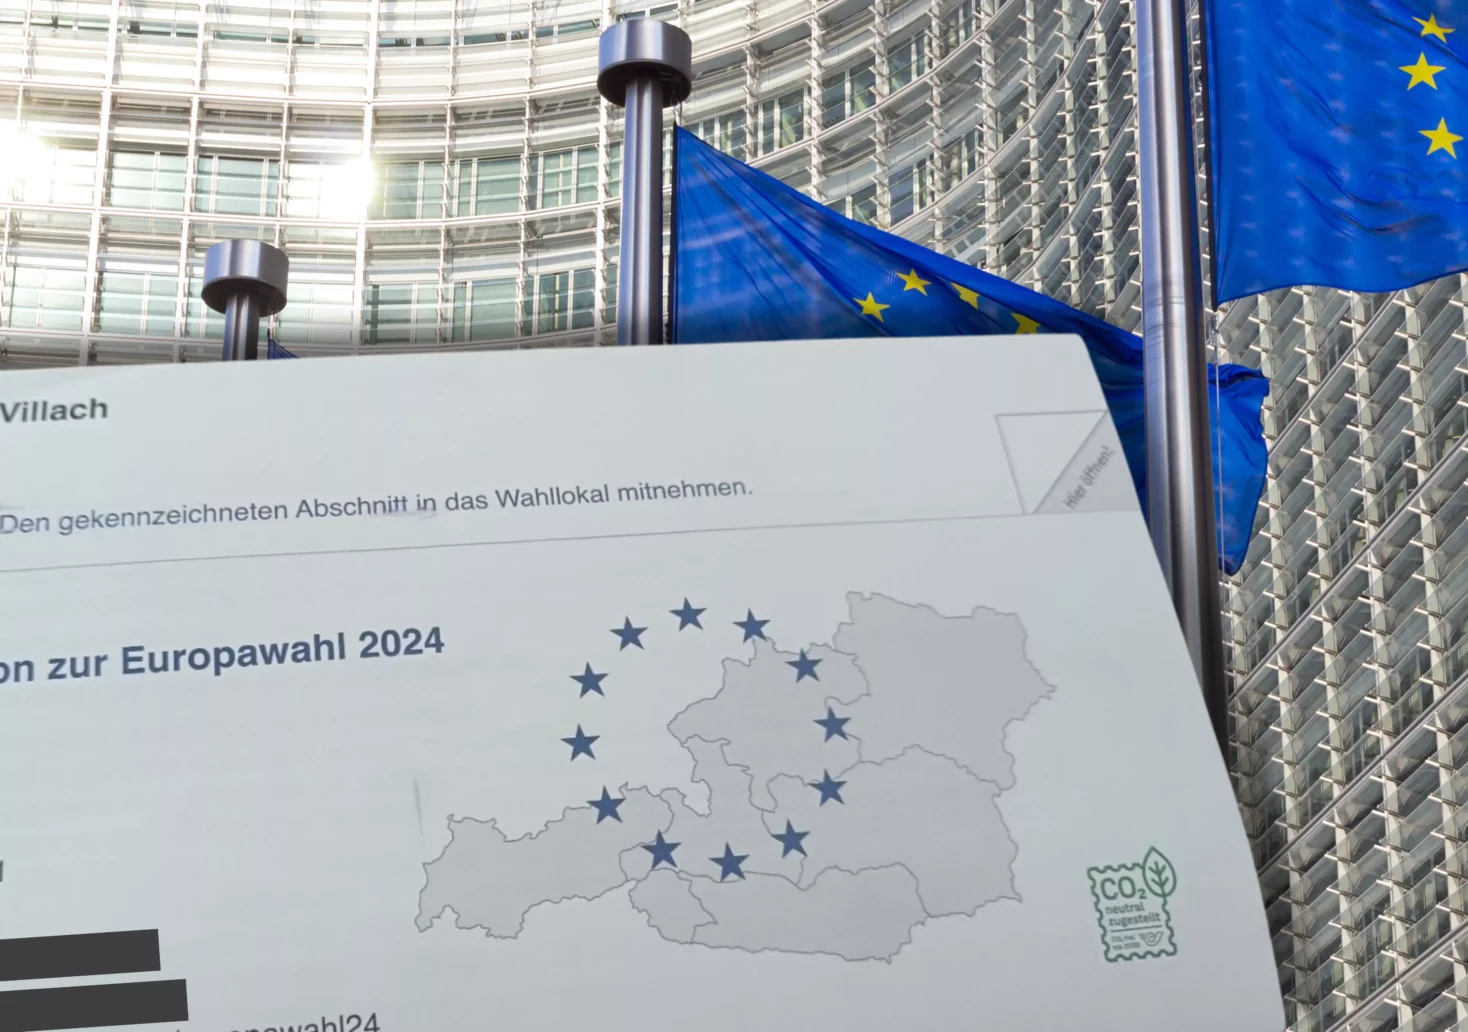 Ein Bild auf 5min.at zeigt das Schreiben der Stadt Villach sowie EU-Flaggen im Hintergrund.